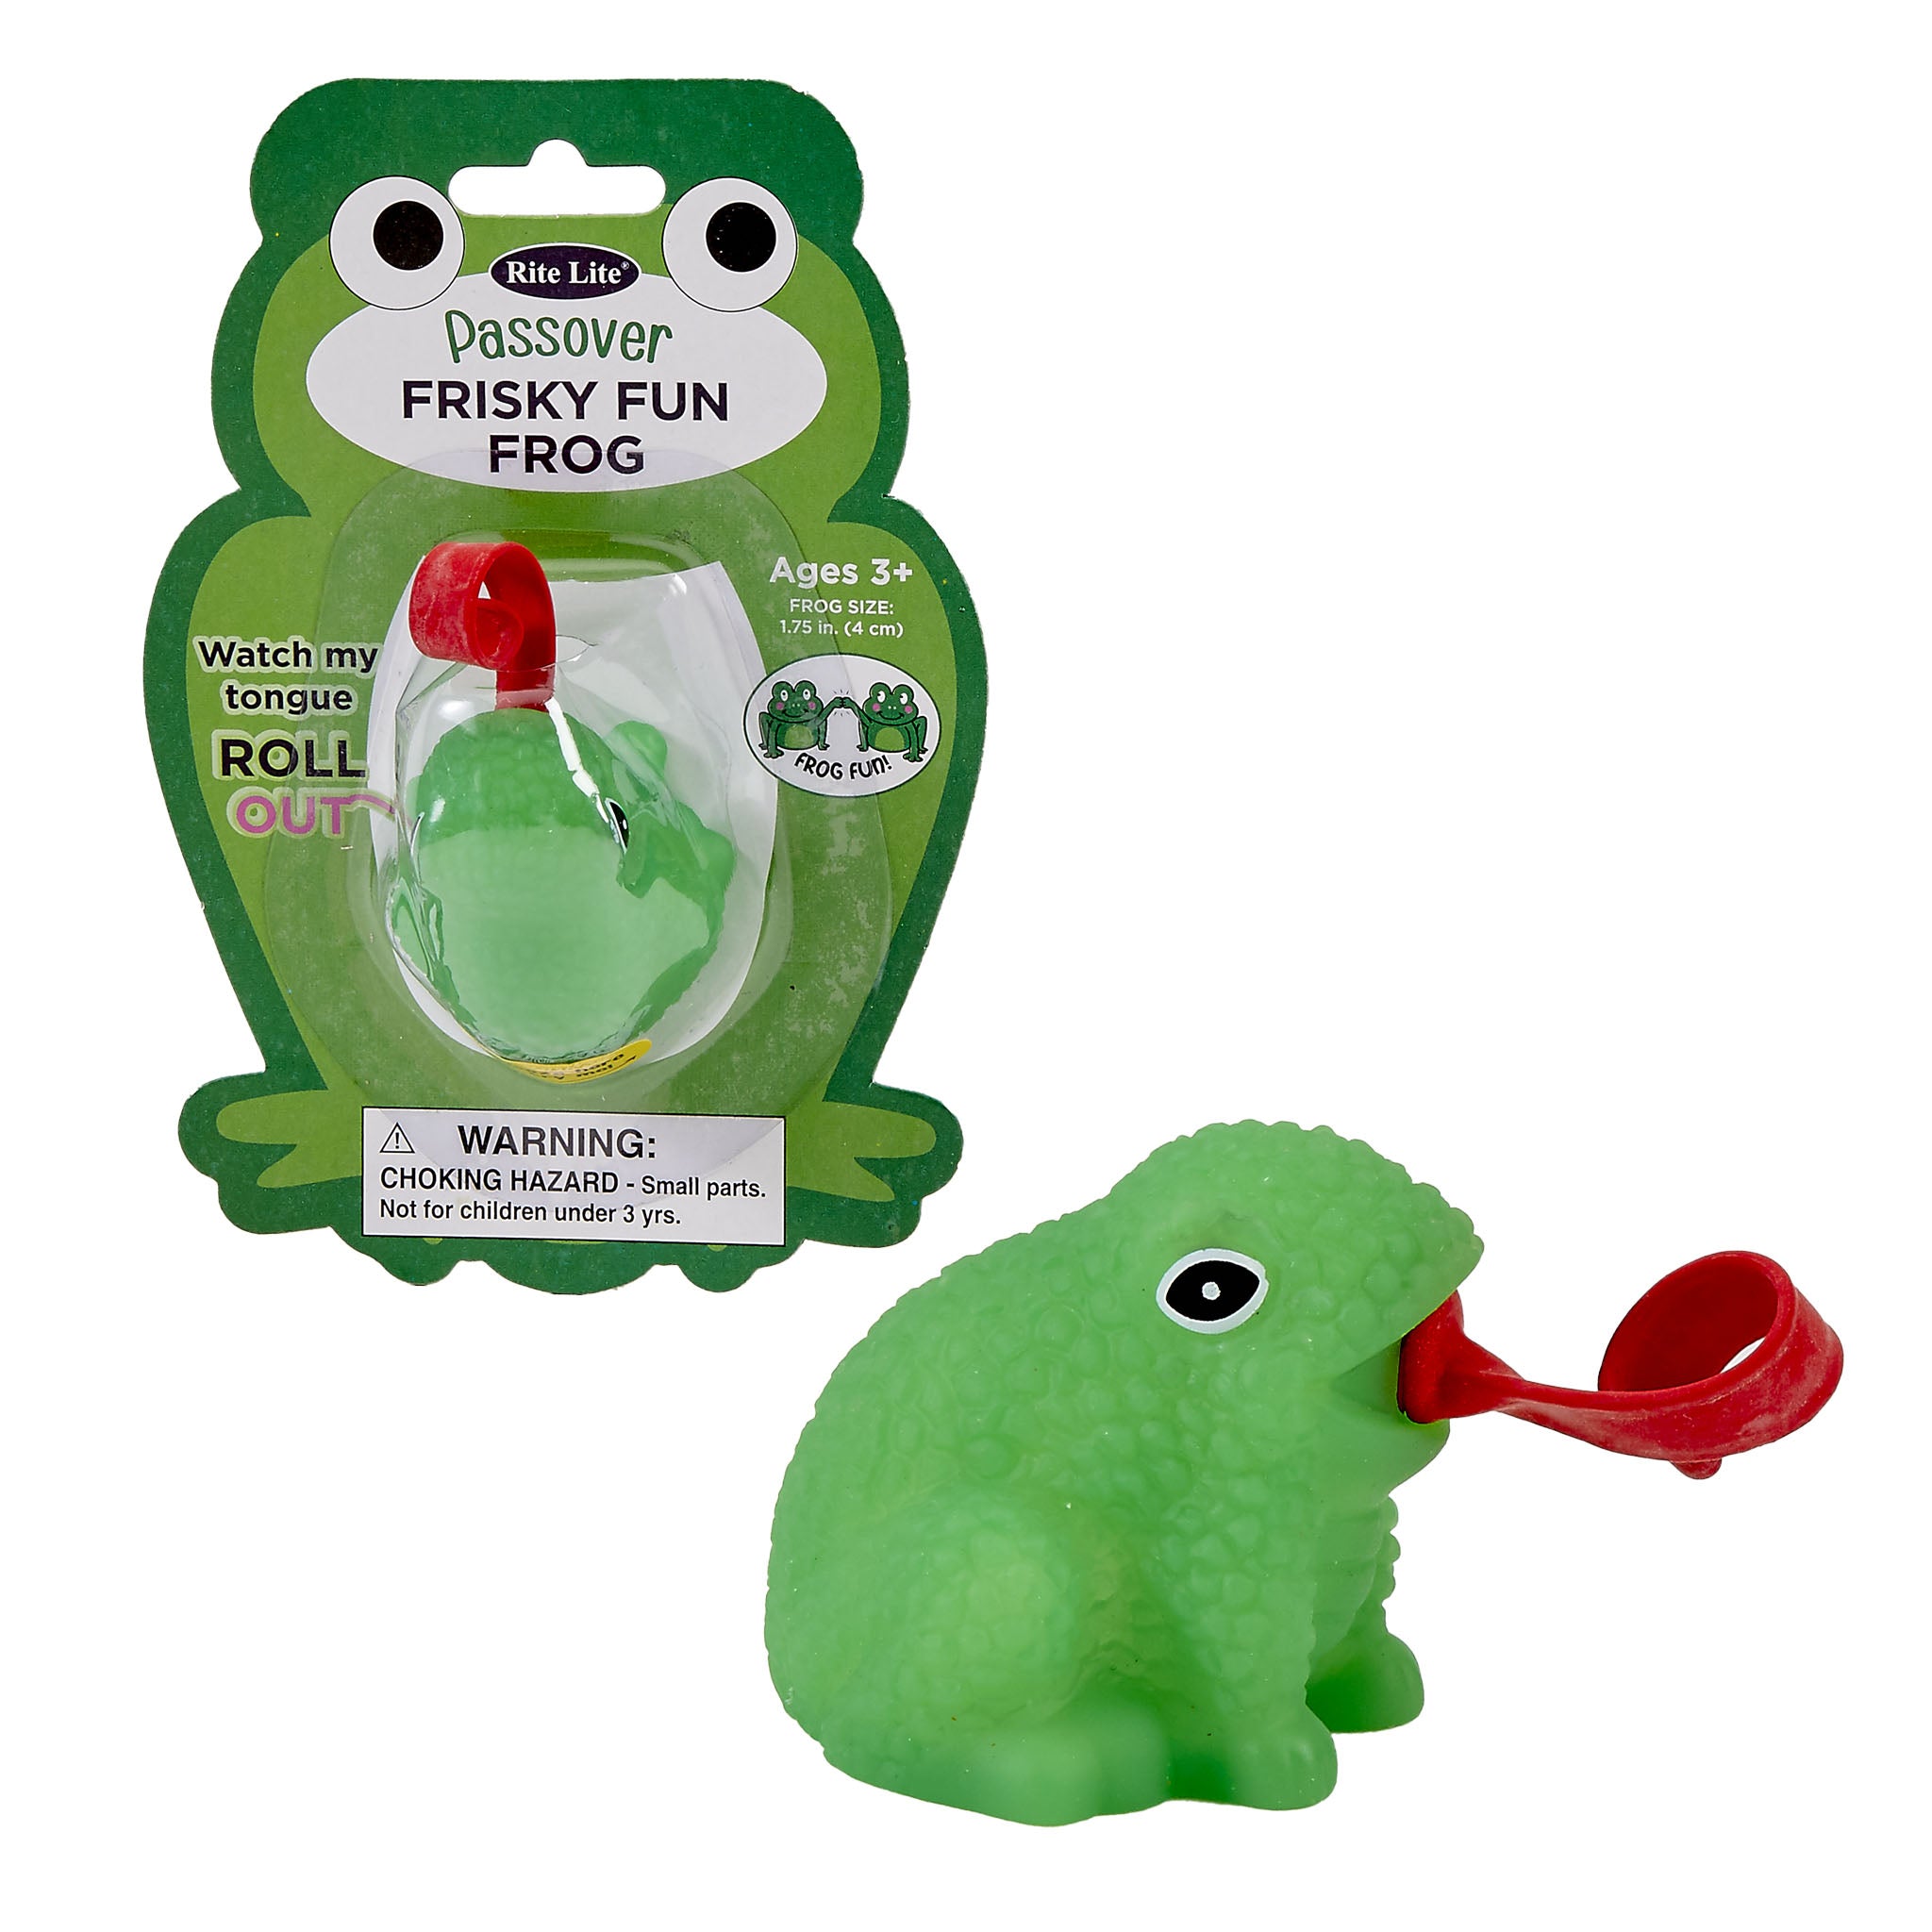 Passover Frisky Fun Frog Toytown – Toytown Toronto